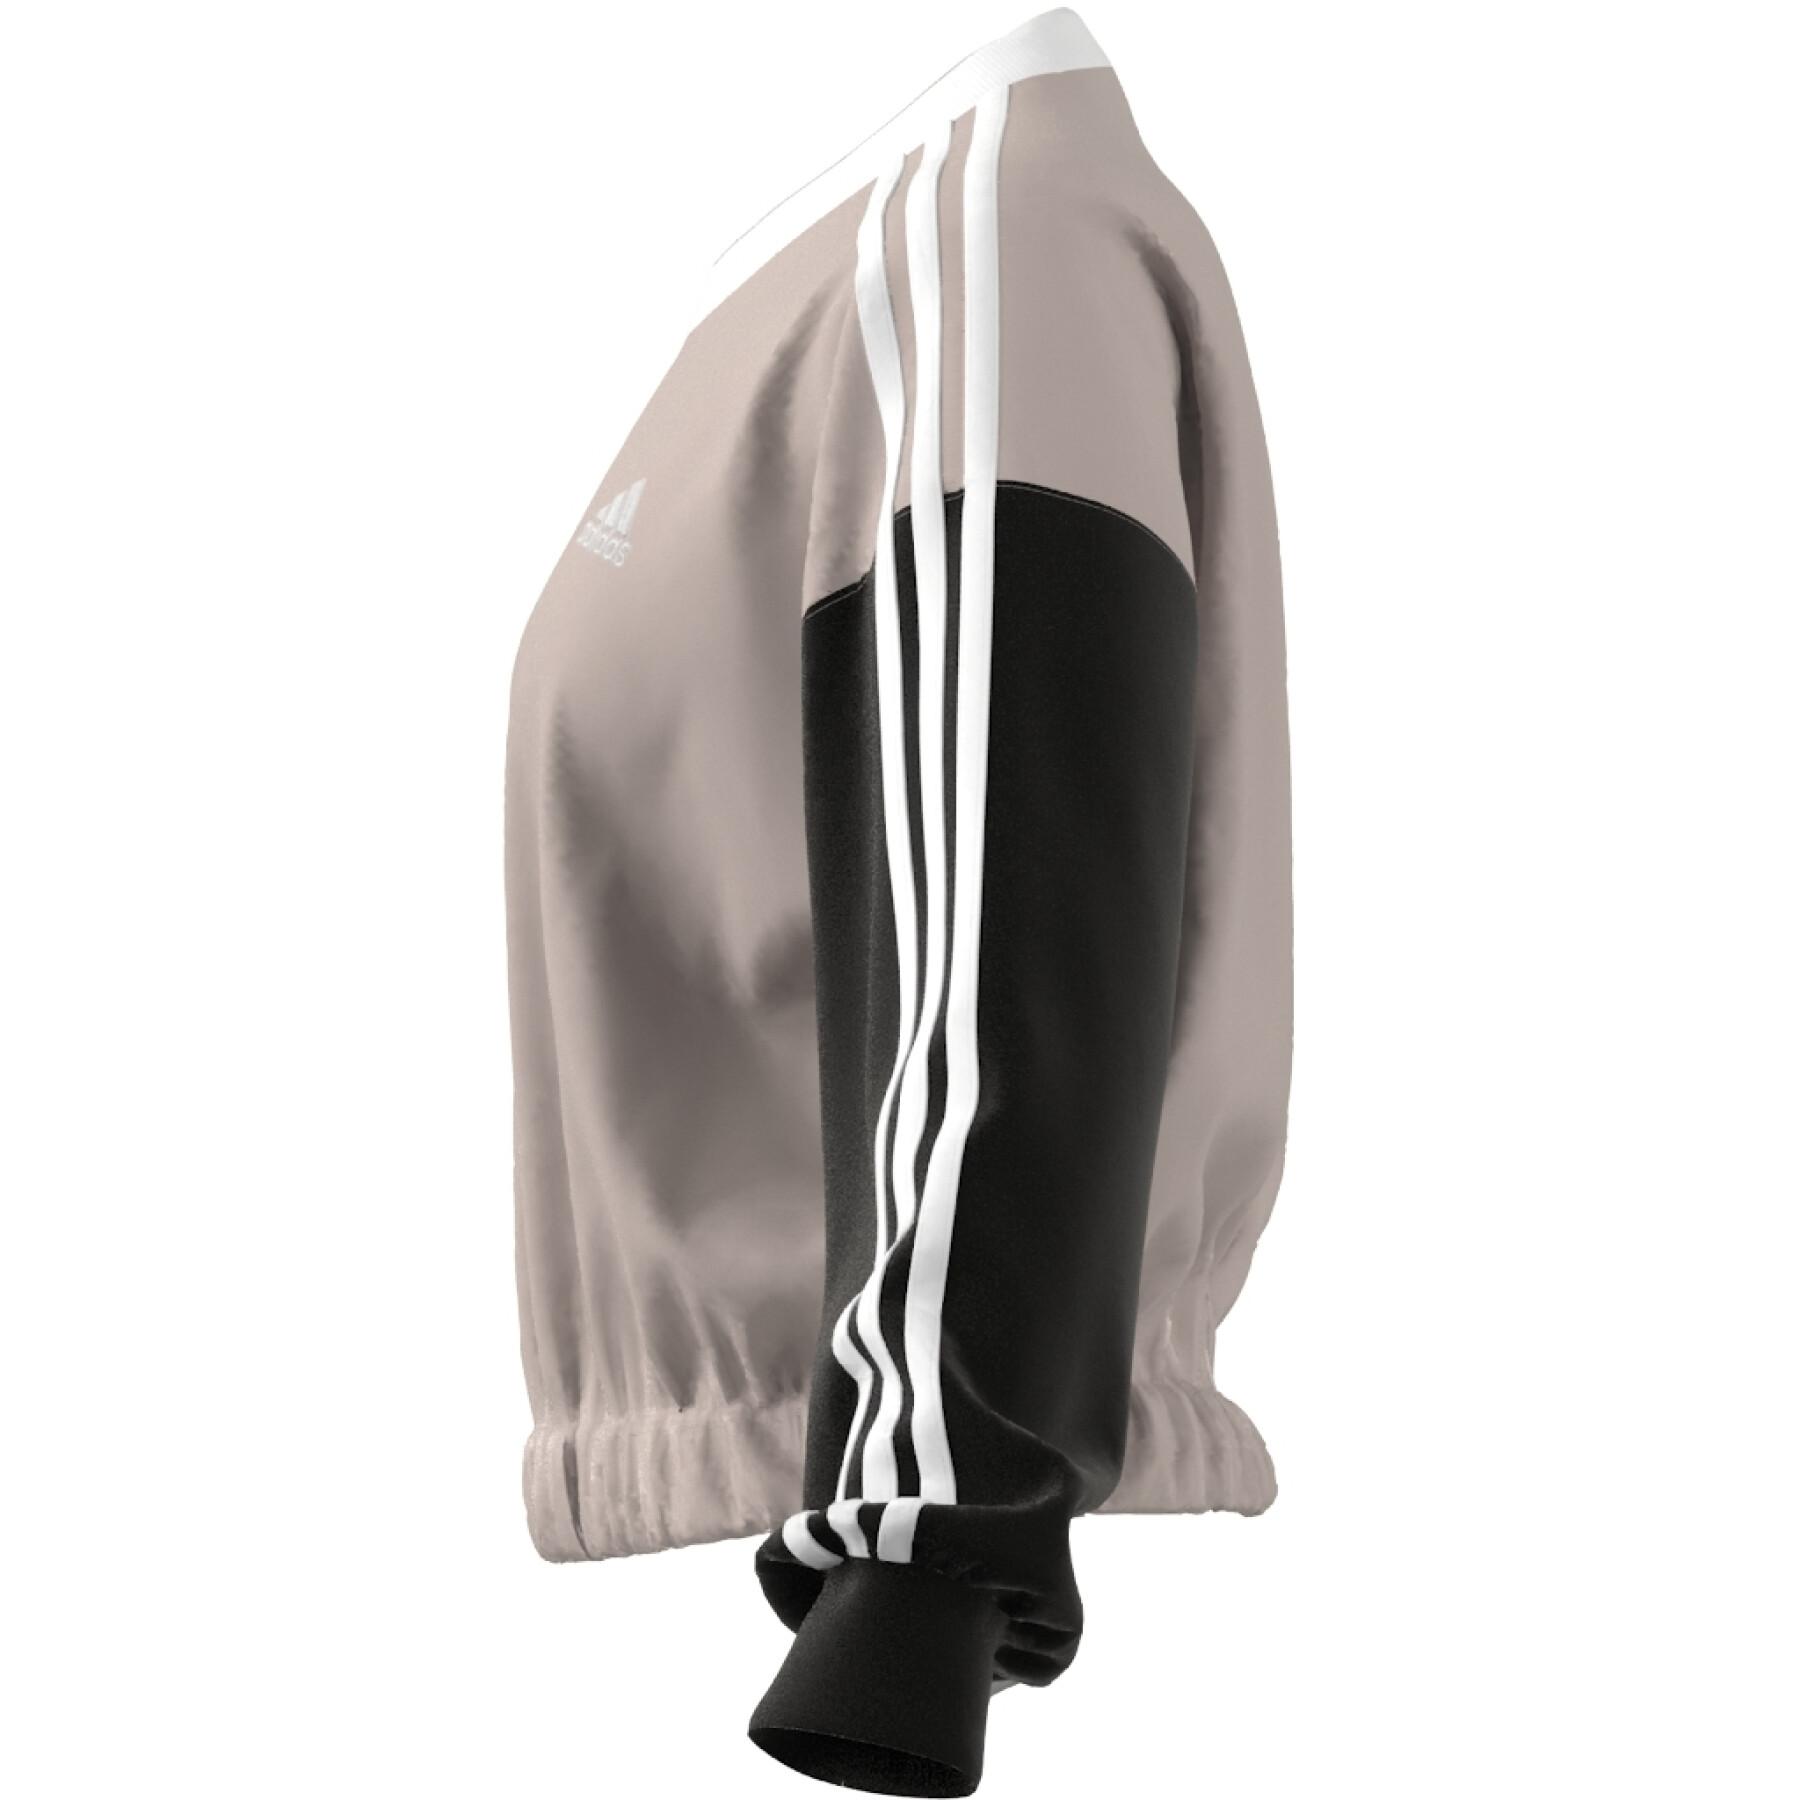 Sweatshirt court woman adidas Essentials 3-Stripes